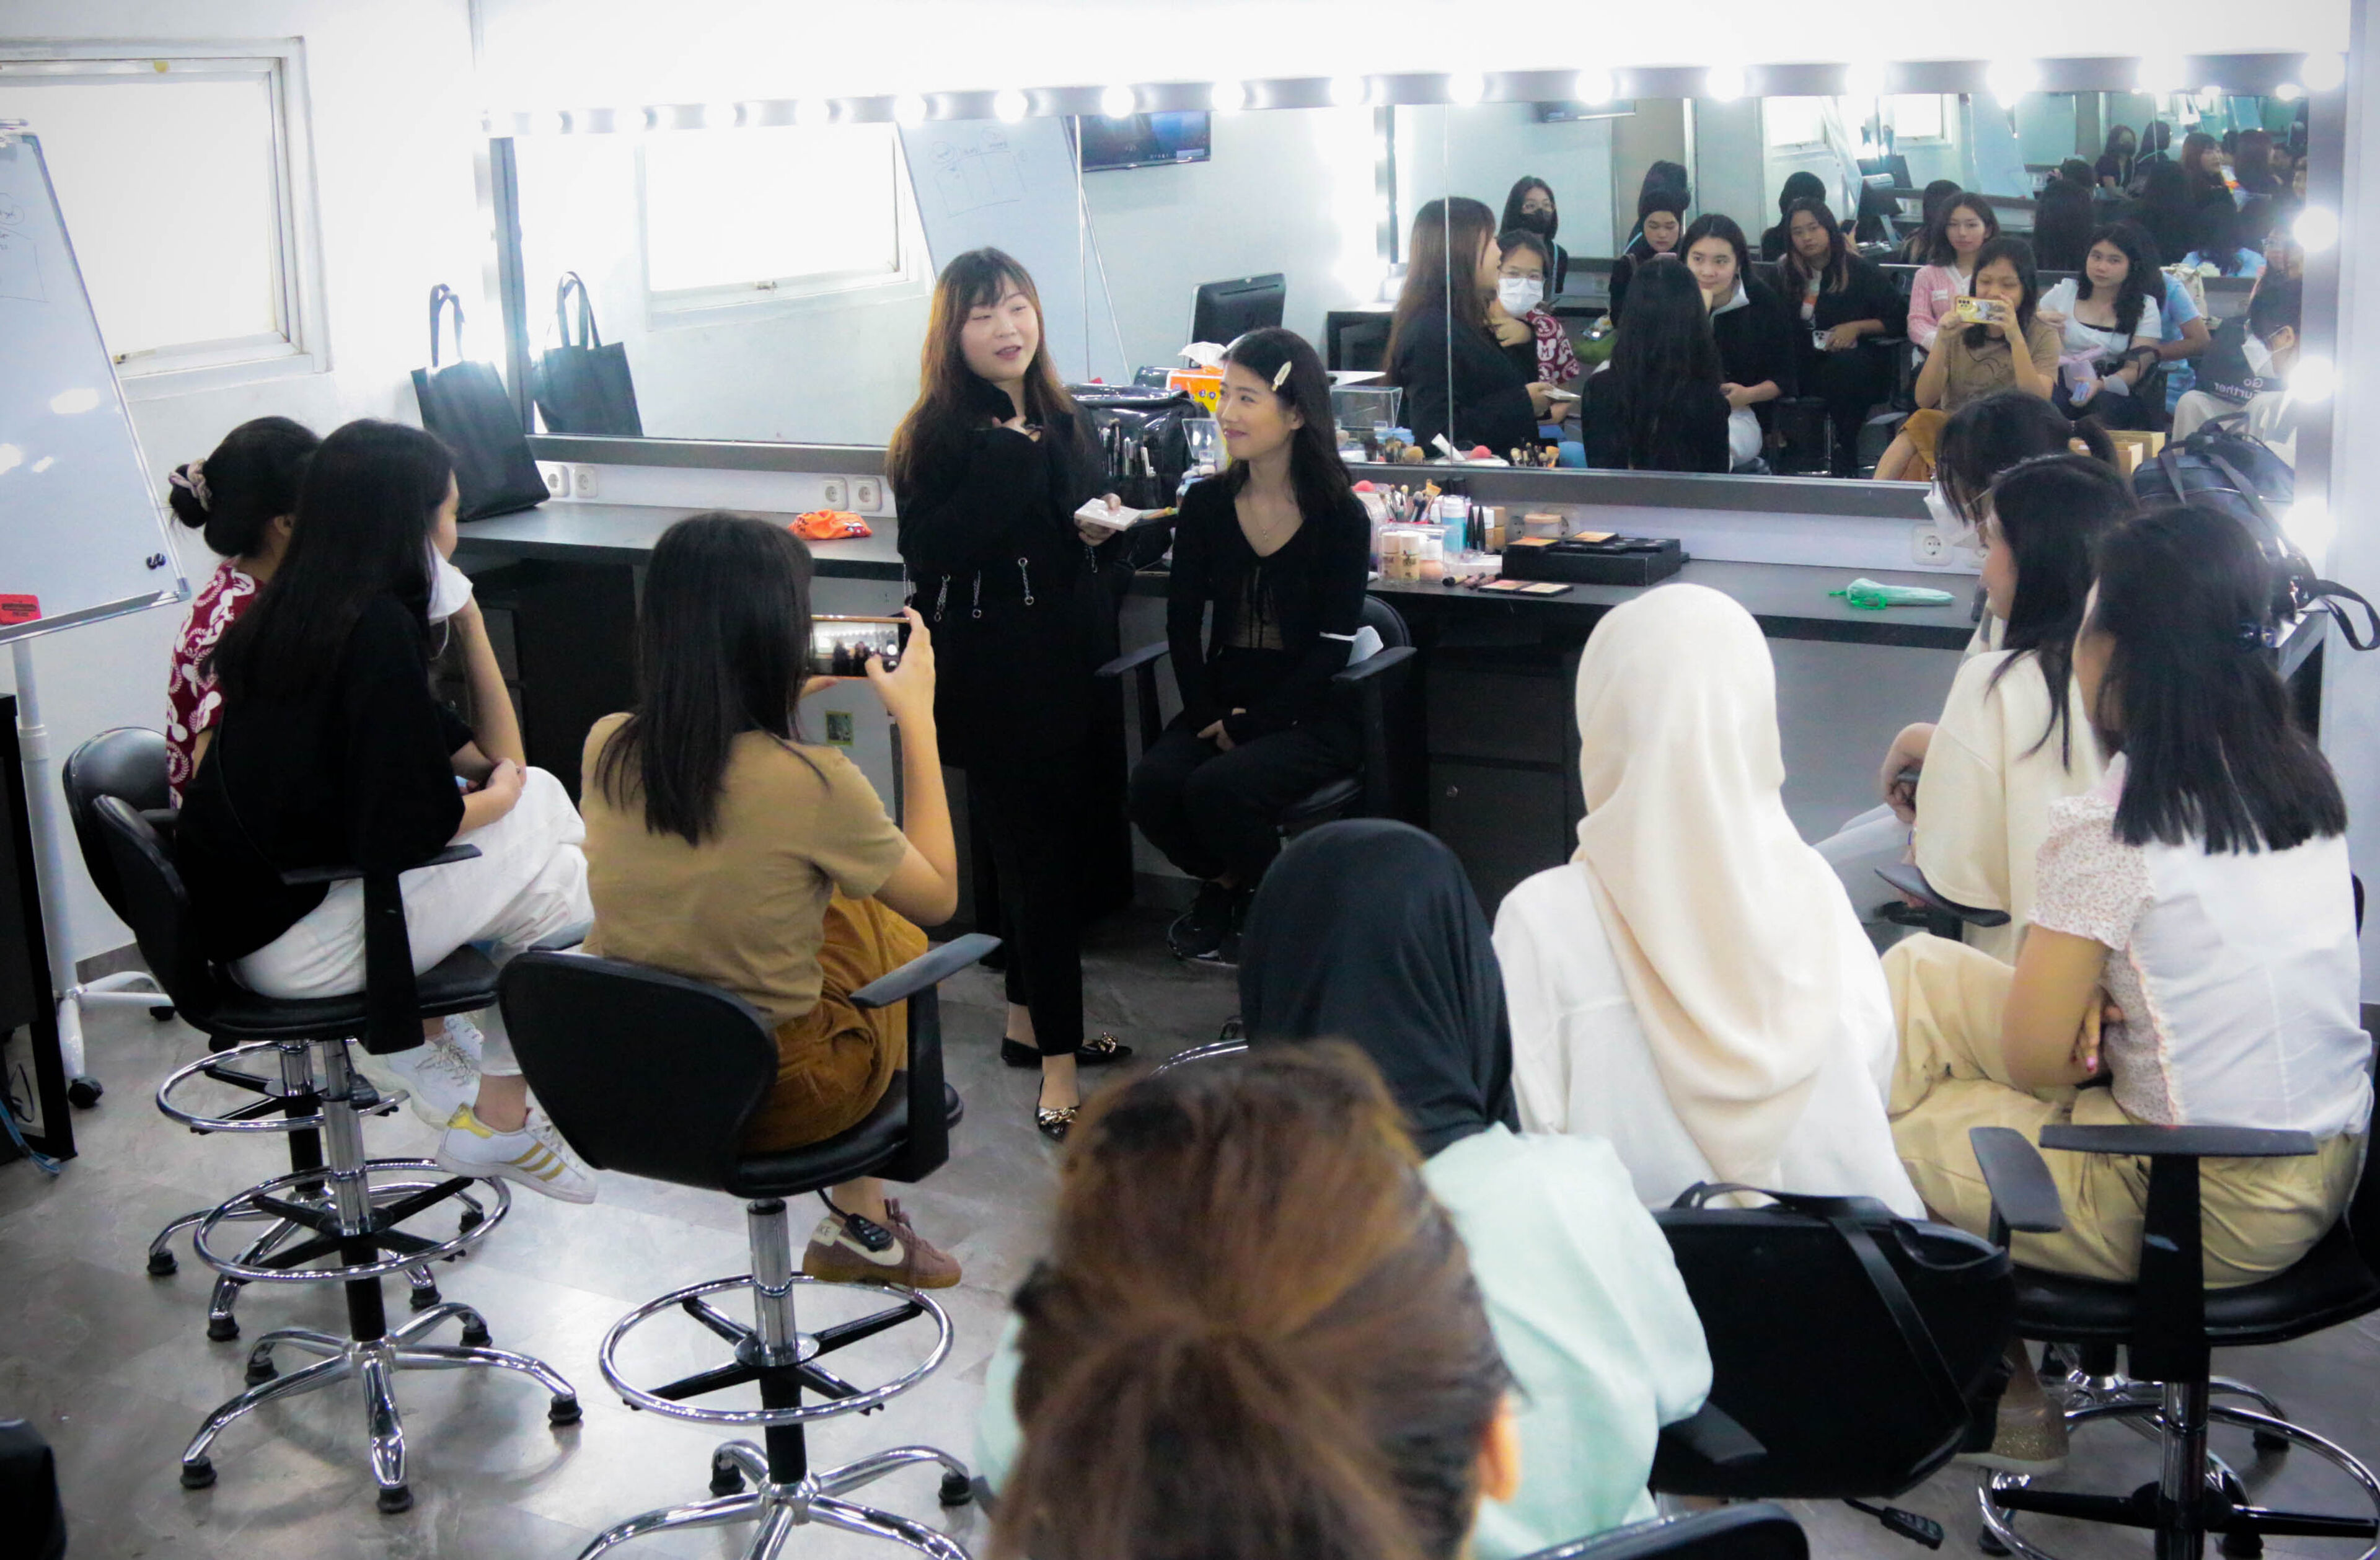 Seorang instruktur mendemonstrasikan teknik penataan rambut kepada sekelompok siswa yang antusias dalam pengaturan salon sekolah kecantikan, dengan cermin yang merefleksikan sesi tersebut.

